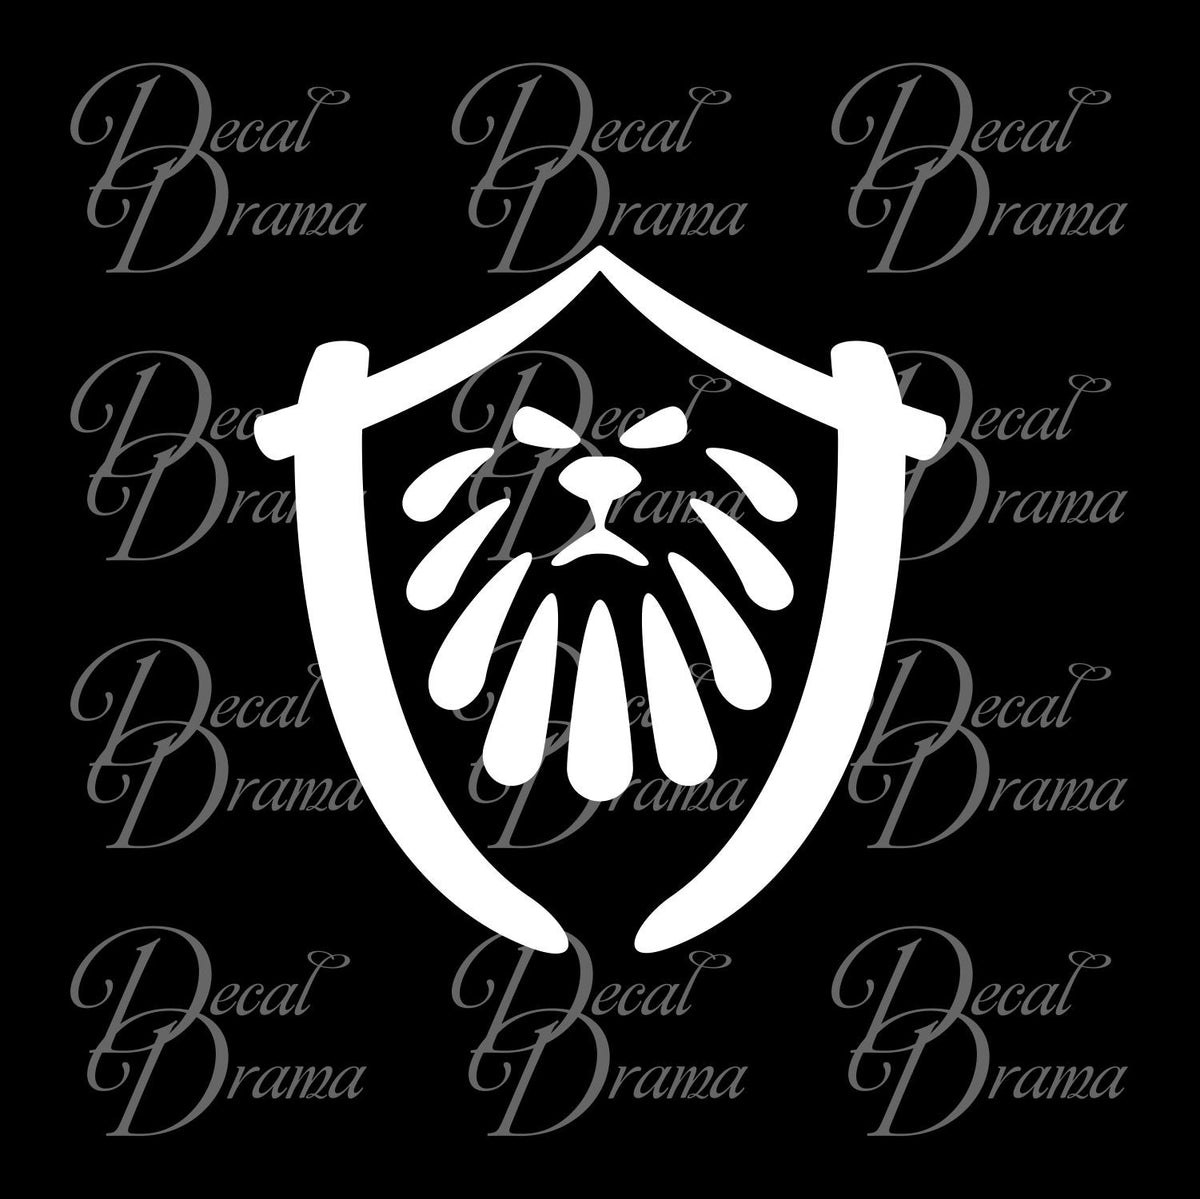 world of warcraft alliance logo black and white